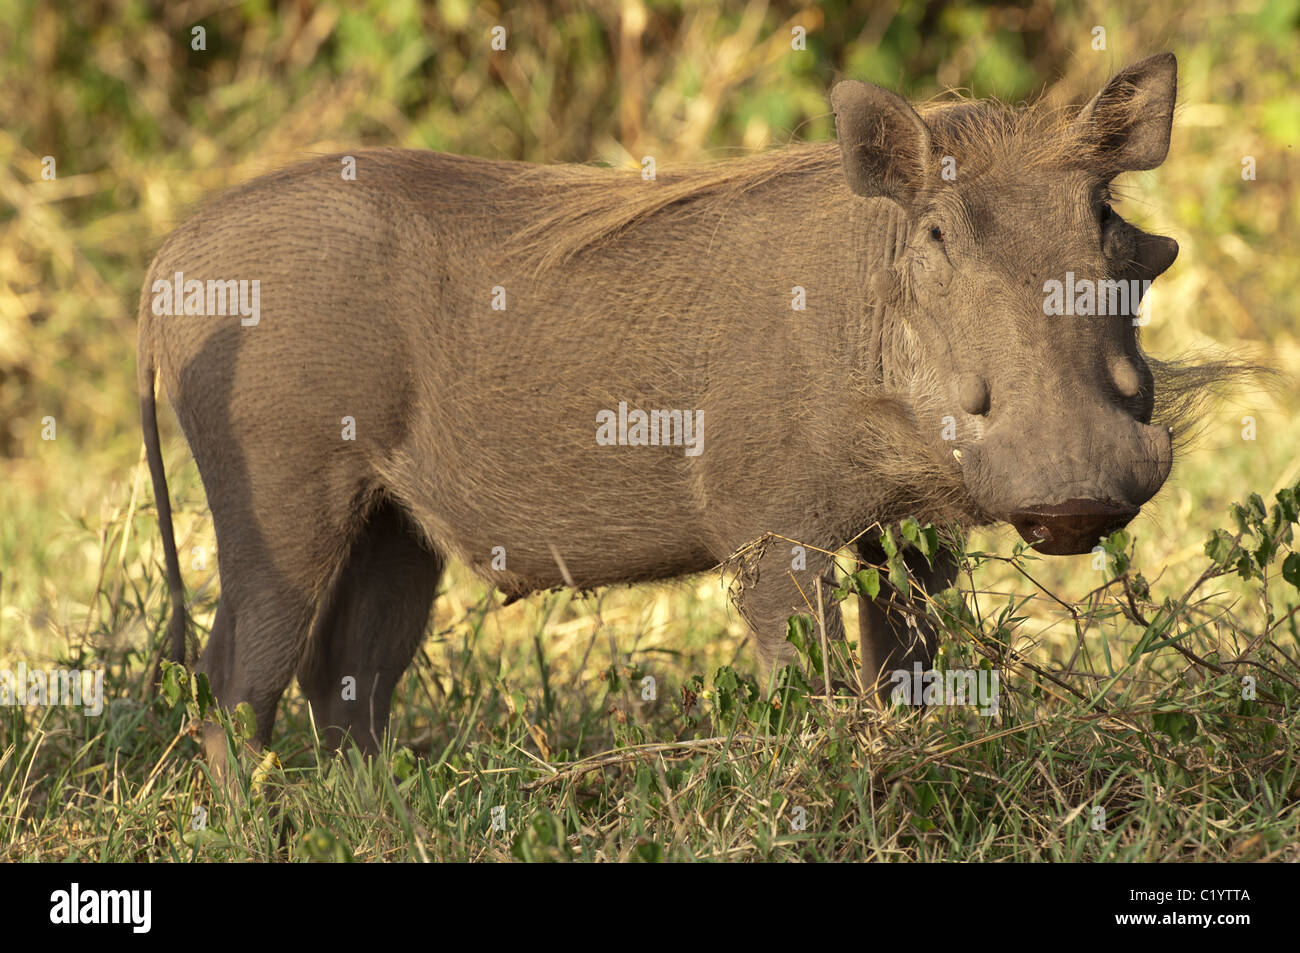 Stock Foto von einem Warzenschwein in den Rasen. Stockfoto